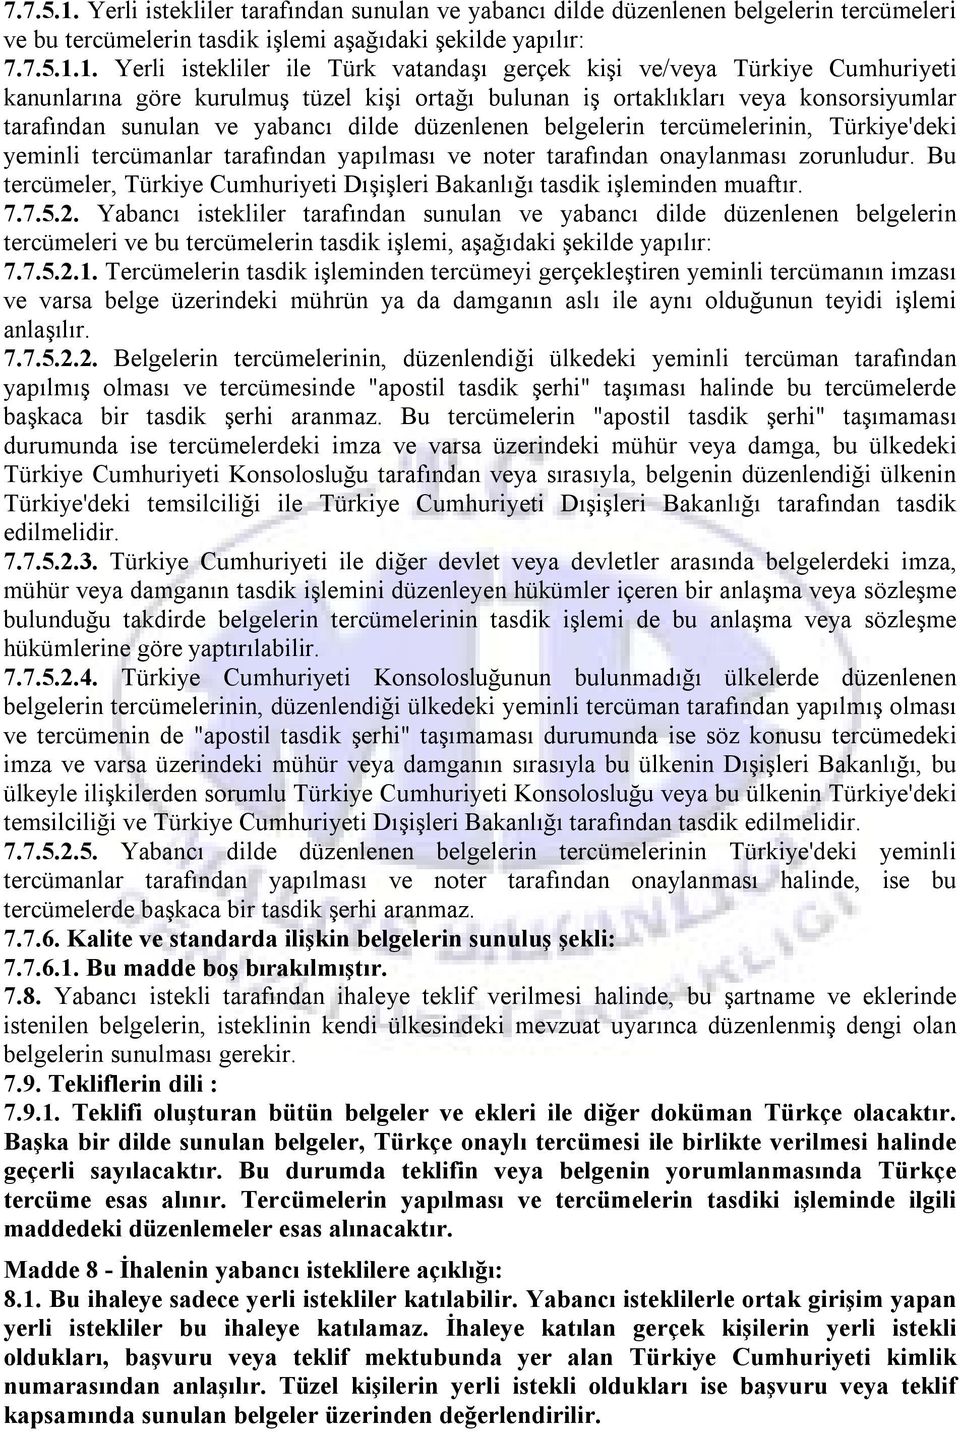 Yerli istekliler ile Türk vatandaşı gerçek kişi ve/veya Türkiye Cumhuriyeti kanunlarına göre kurulmuş tüzel kişi ortağı bulunan iş ortaklıkları veya konsorsiyumlar tarafından sunulan ve yabancı dilde